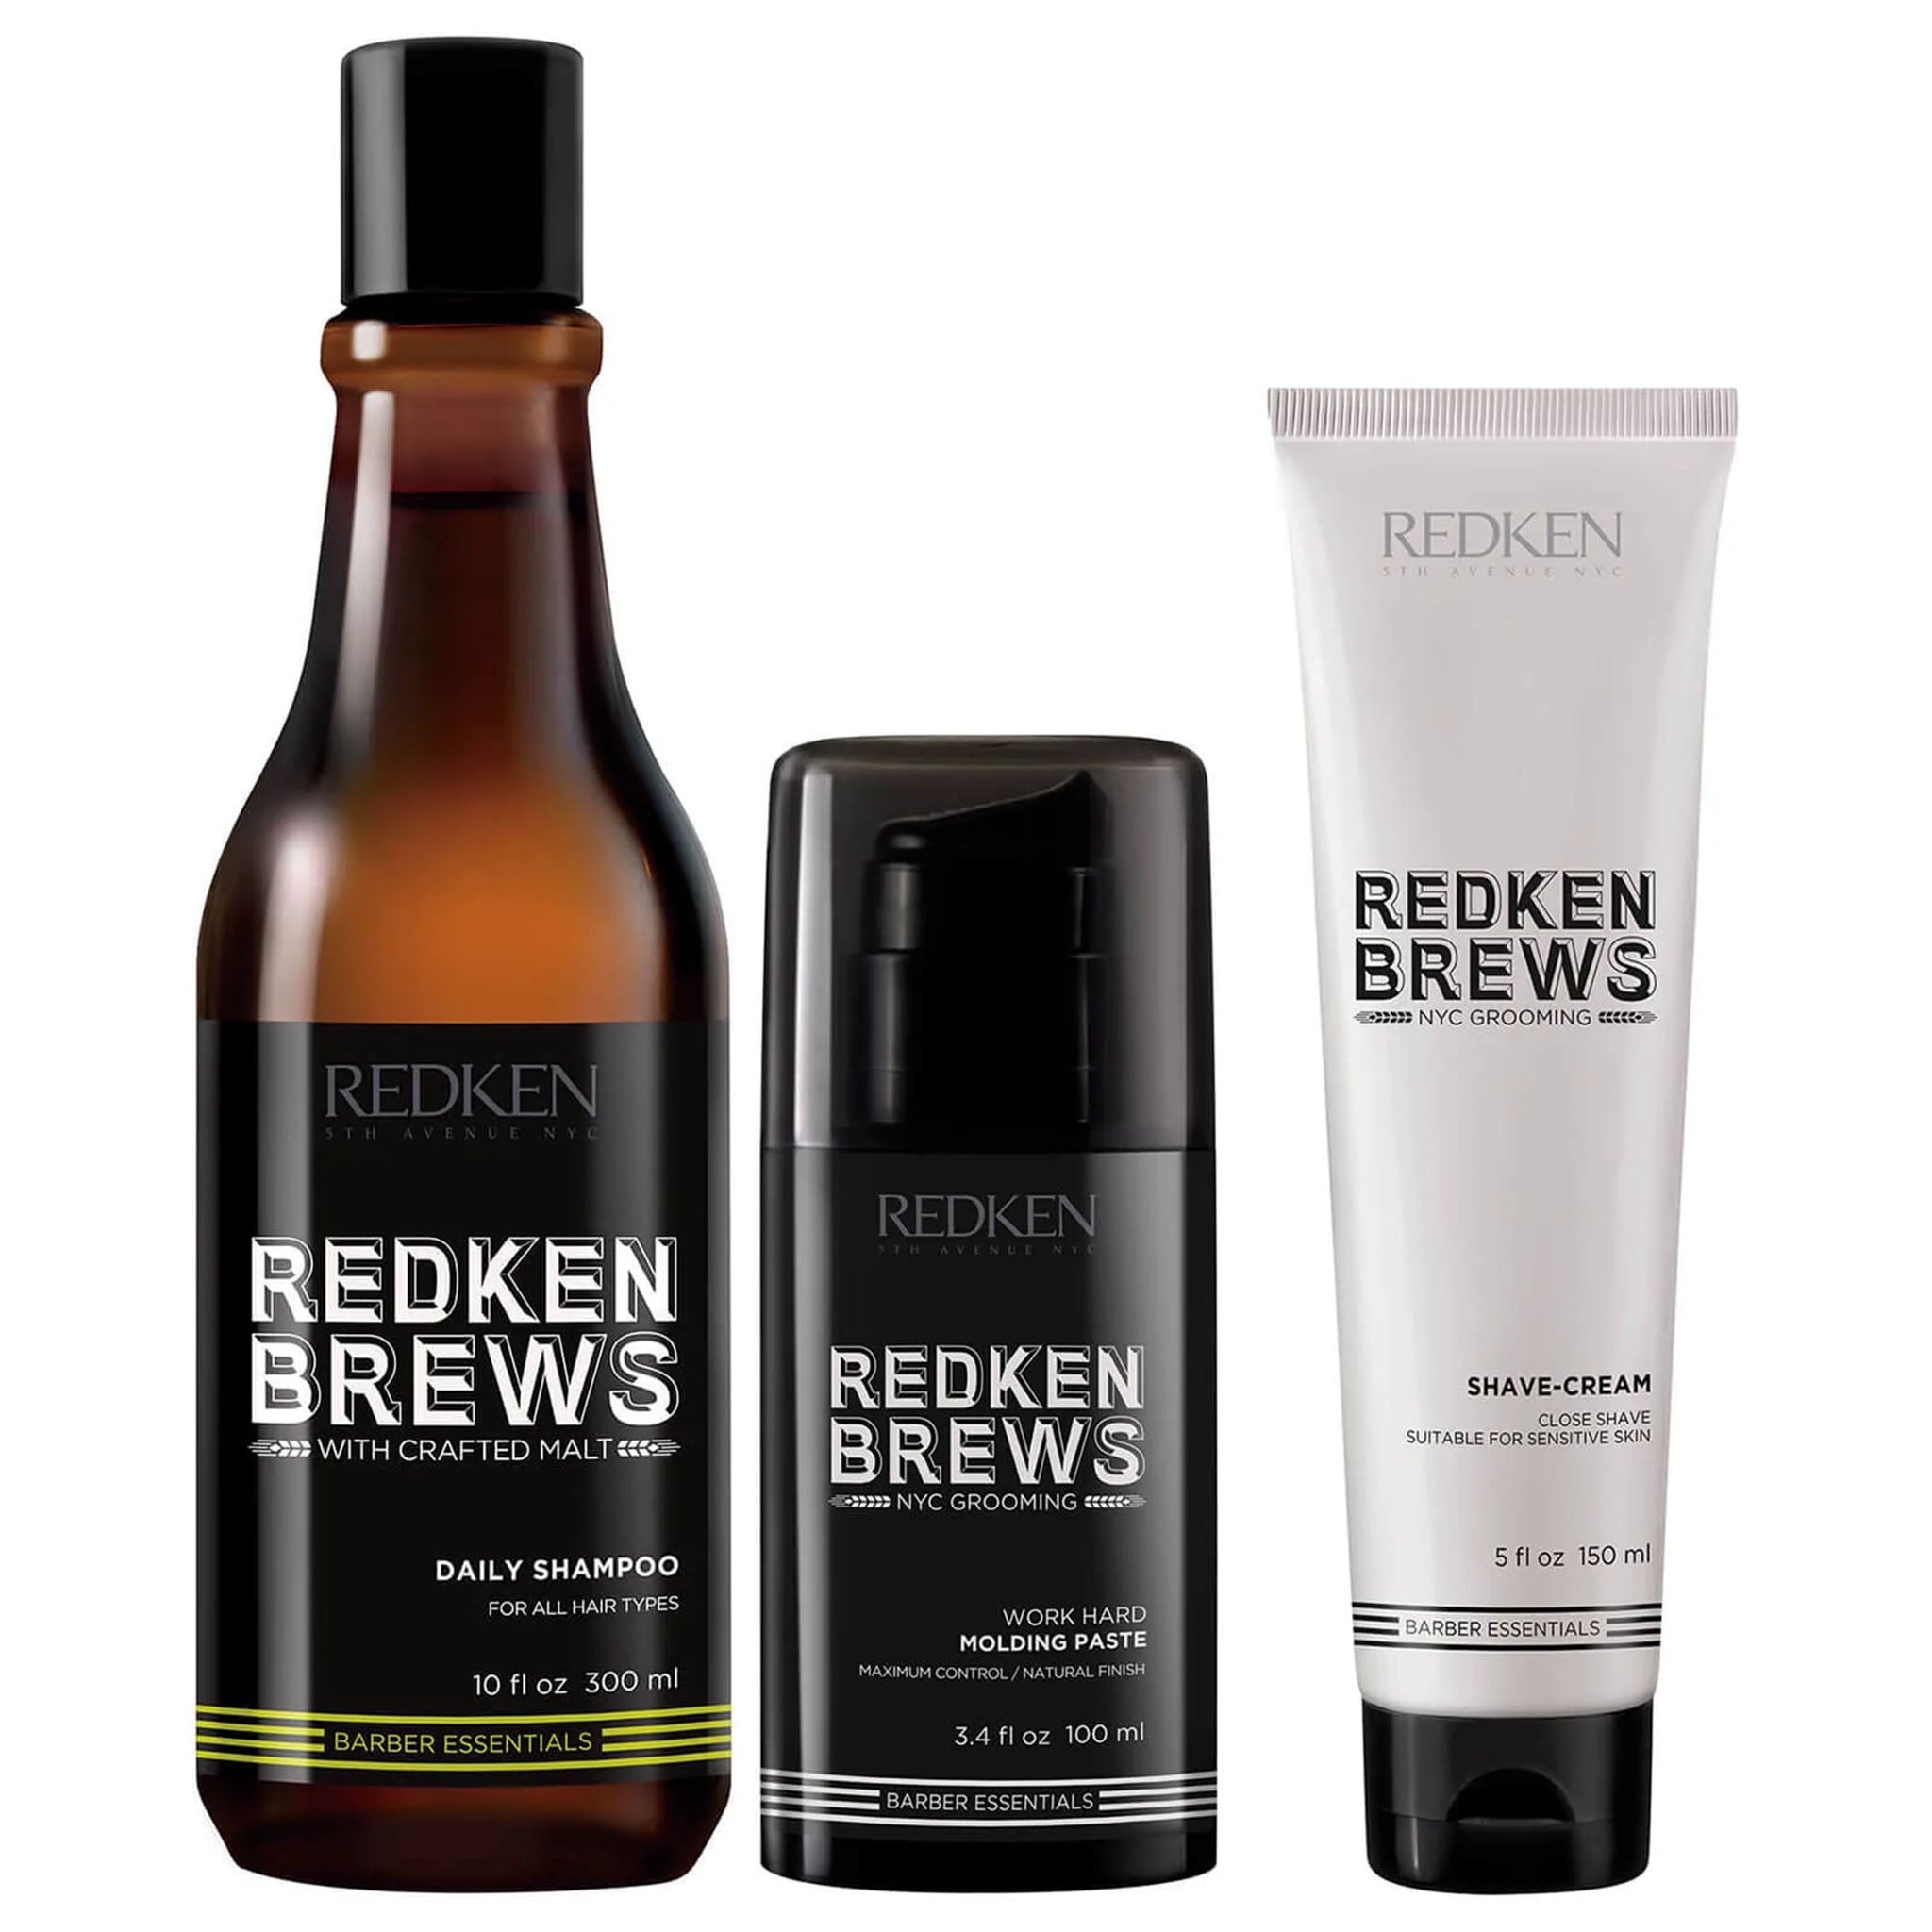 Redken Brews. Shampoing Quotidien - 300ml - Concept C. Shop